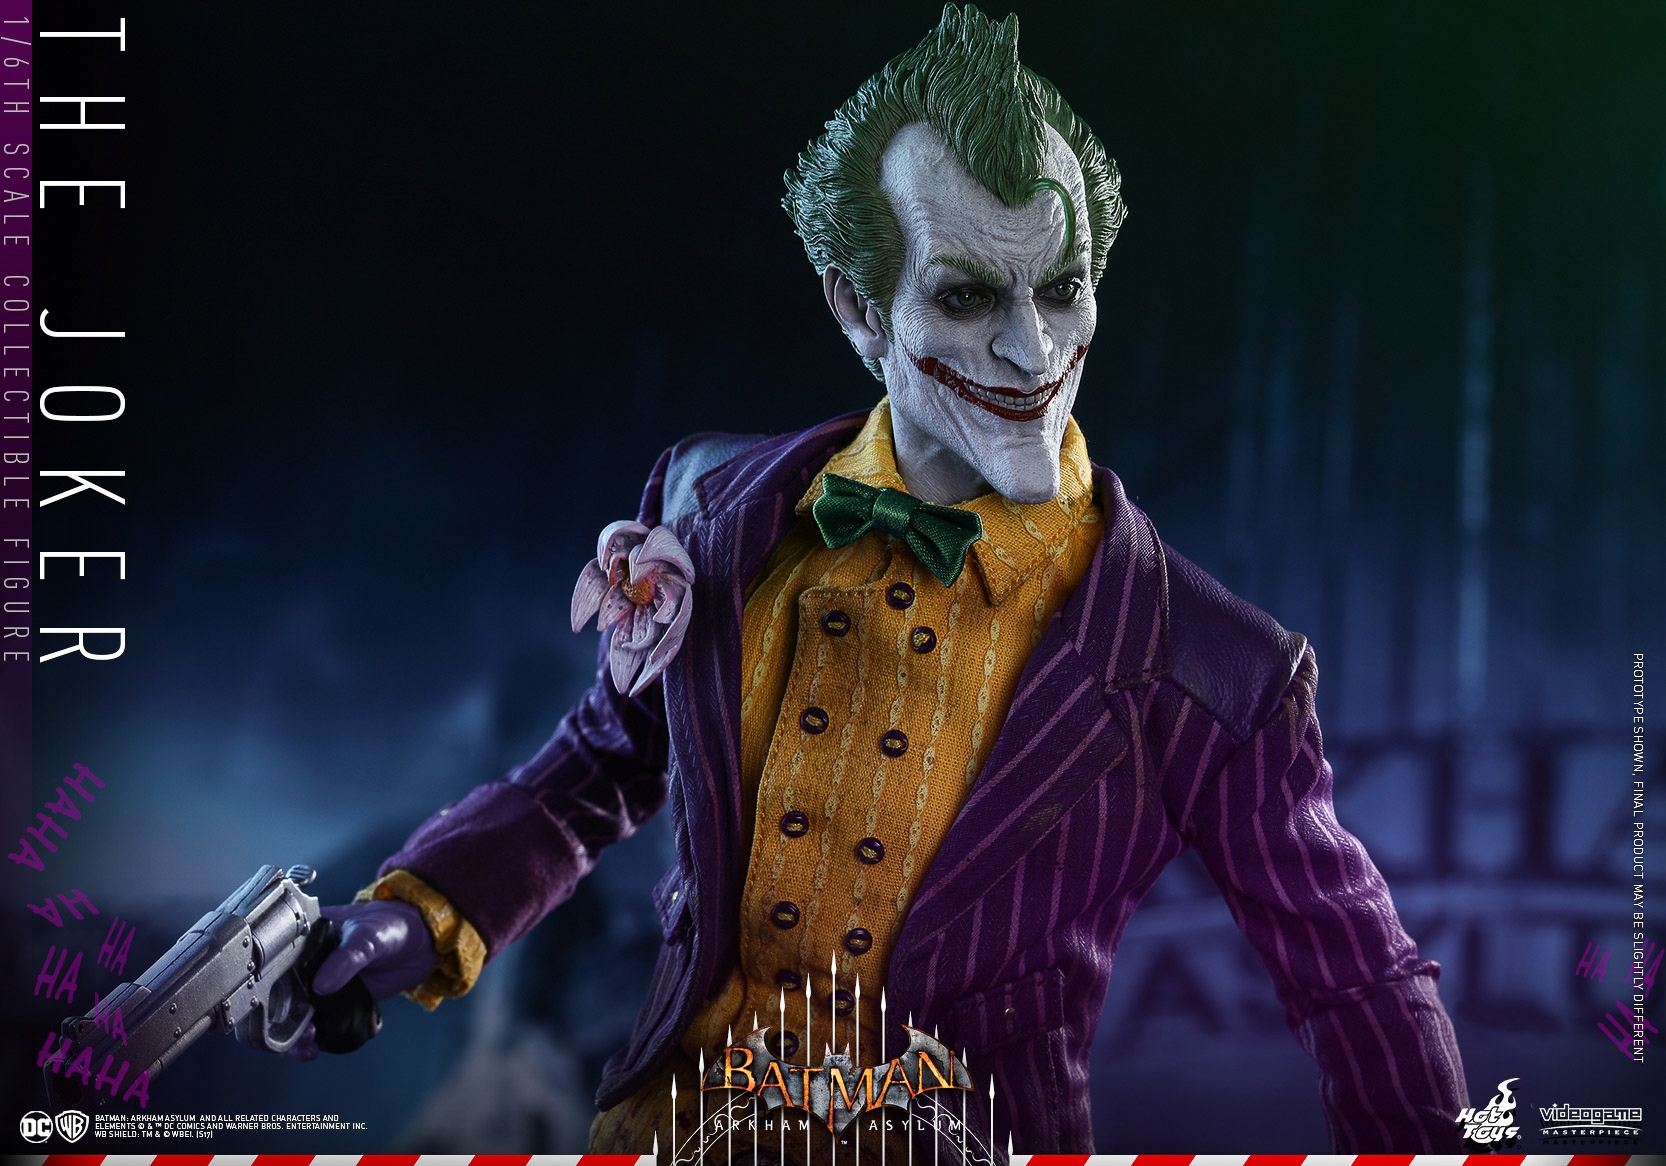 Hot-Toys-Batman-Arkham-Asylum-Joker-Collectible-Figure-015.jpg